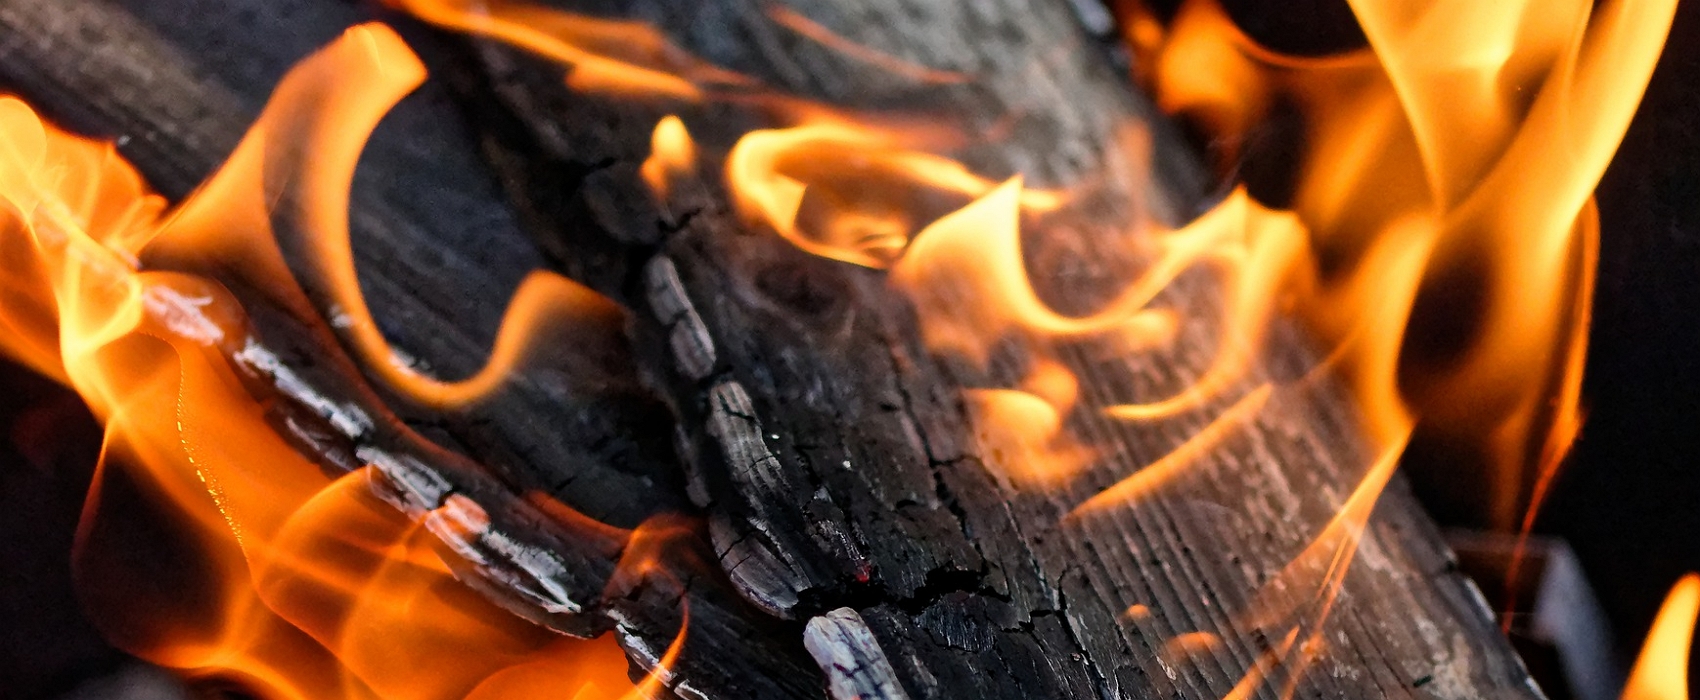 Les cendres de bois constituent un allié naturel au jardinier. © Alexas_fotos, Pixabay